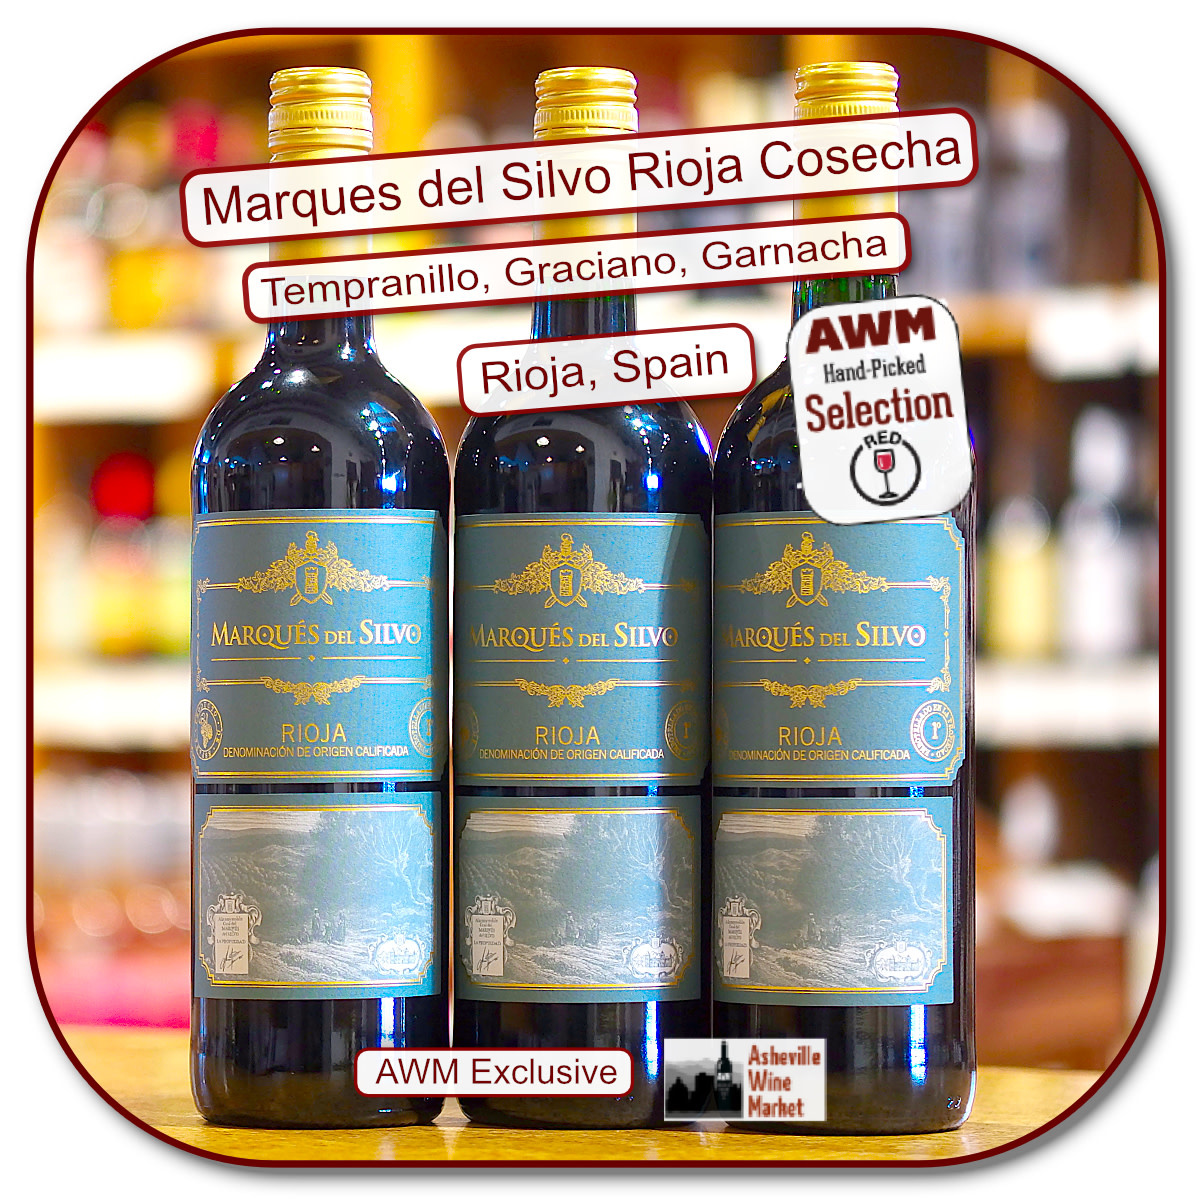 Marques del Silvo Rioja Tinto Cosecha 2019 - The Asheville Wine Market